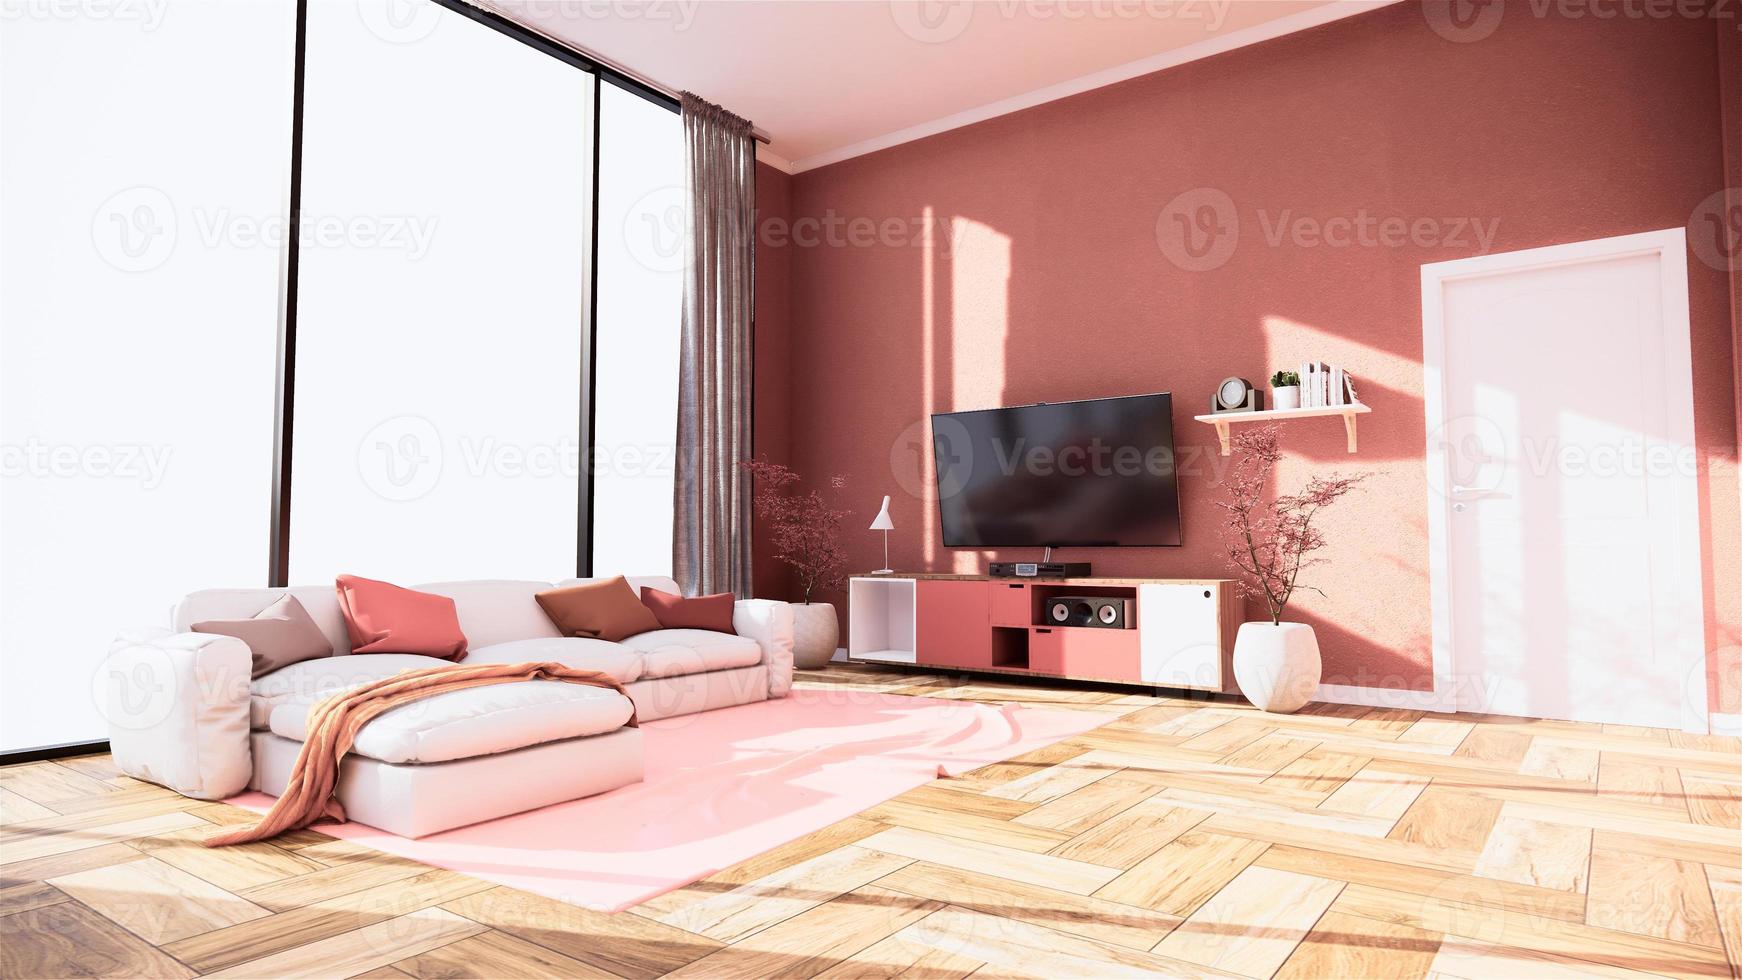 mobile tv e display interno giapponese del soggiorno rosa sakura per l'editing. rendering 3d foto